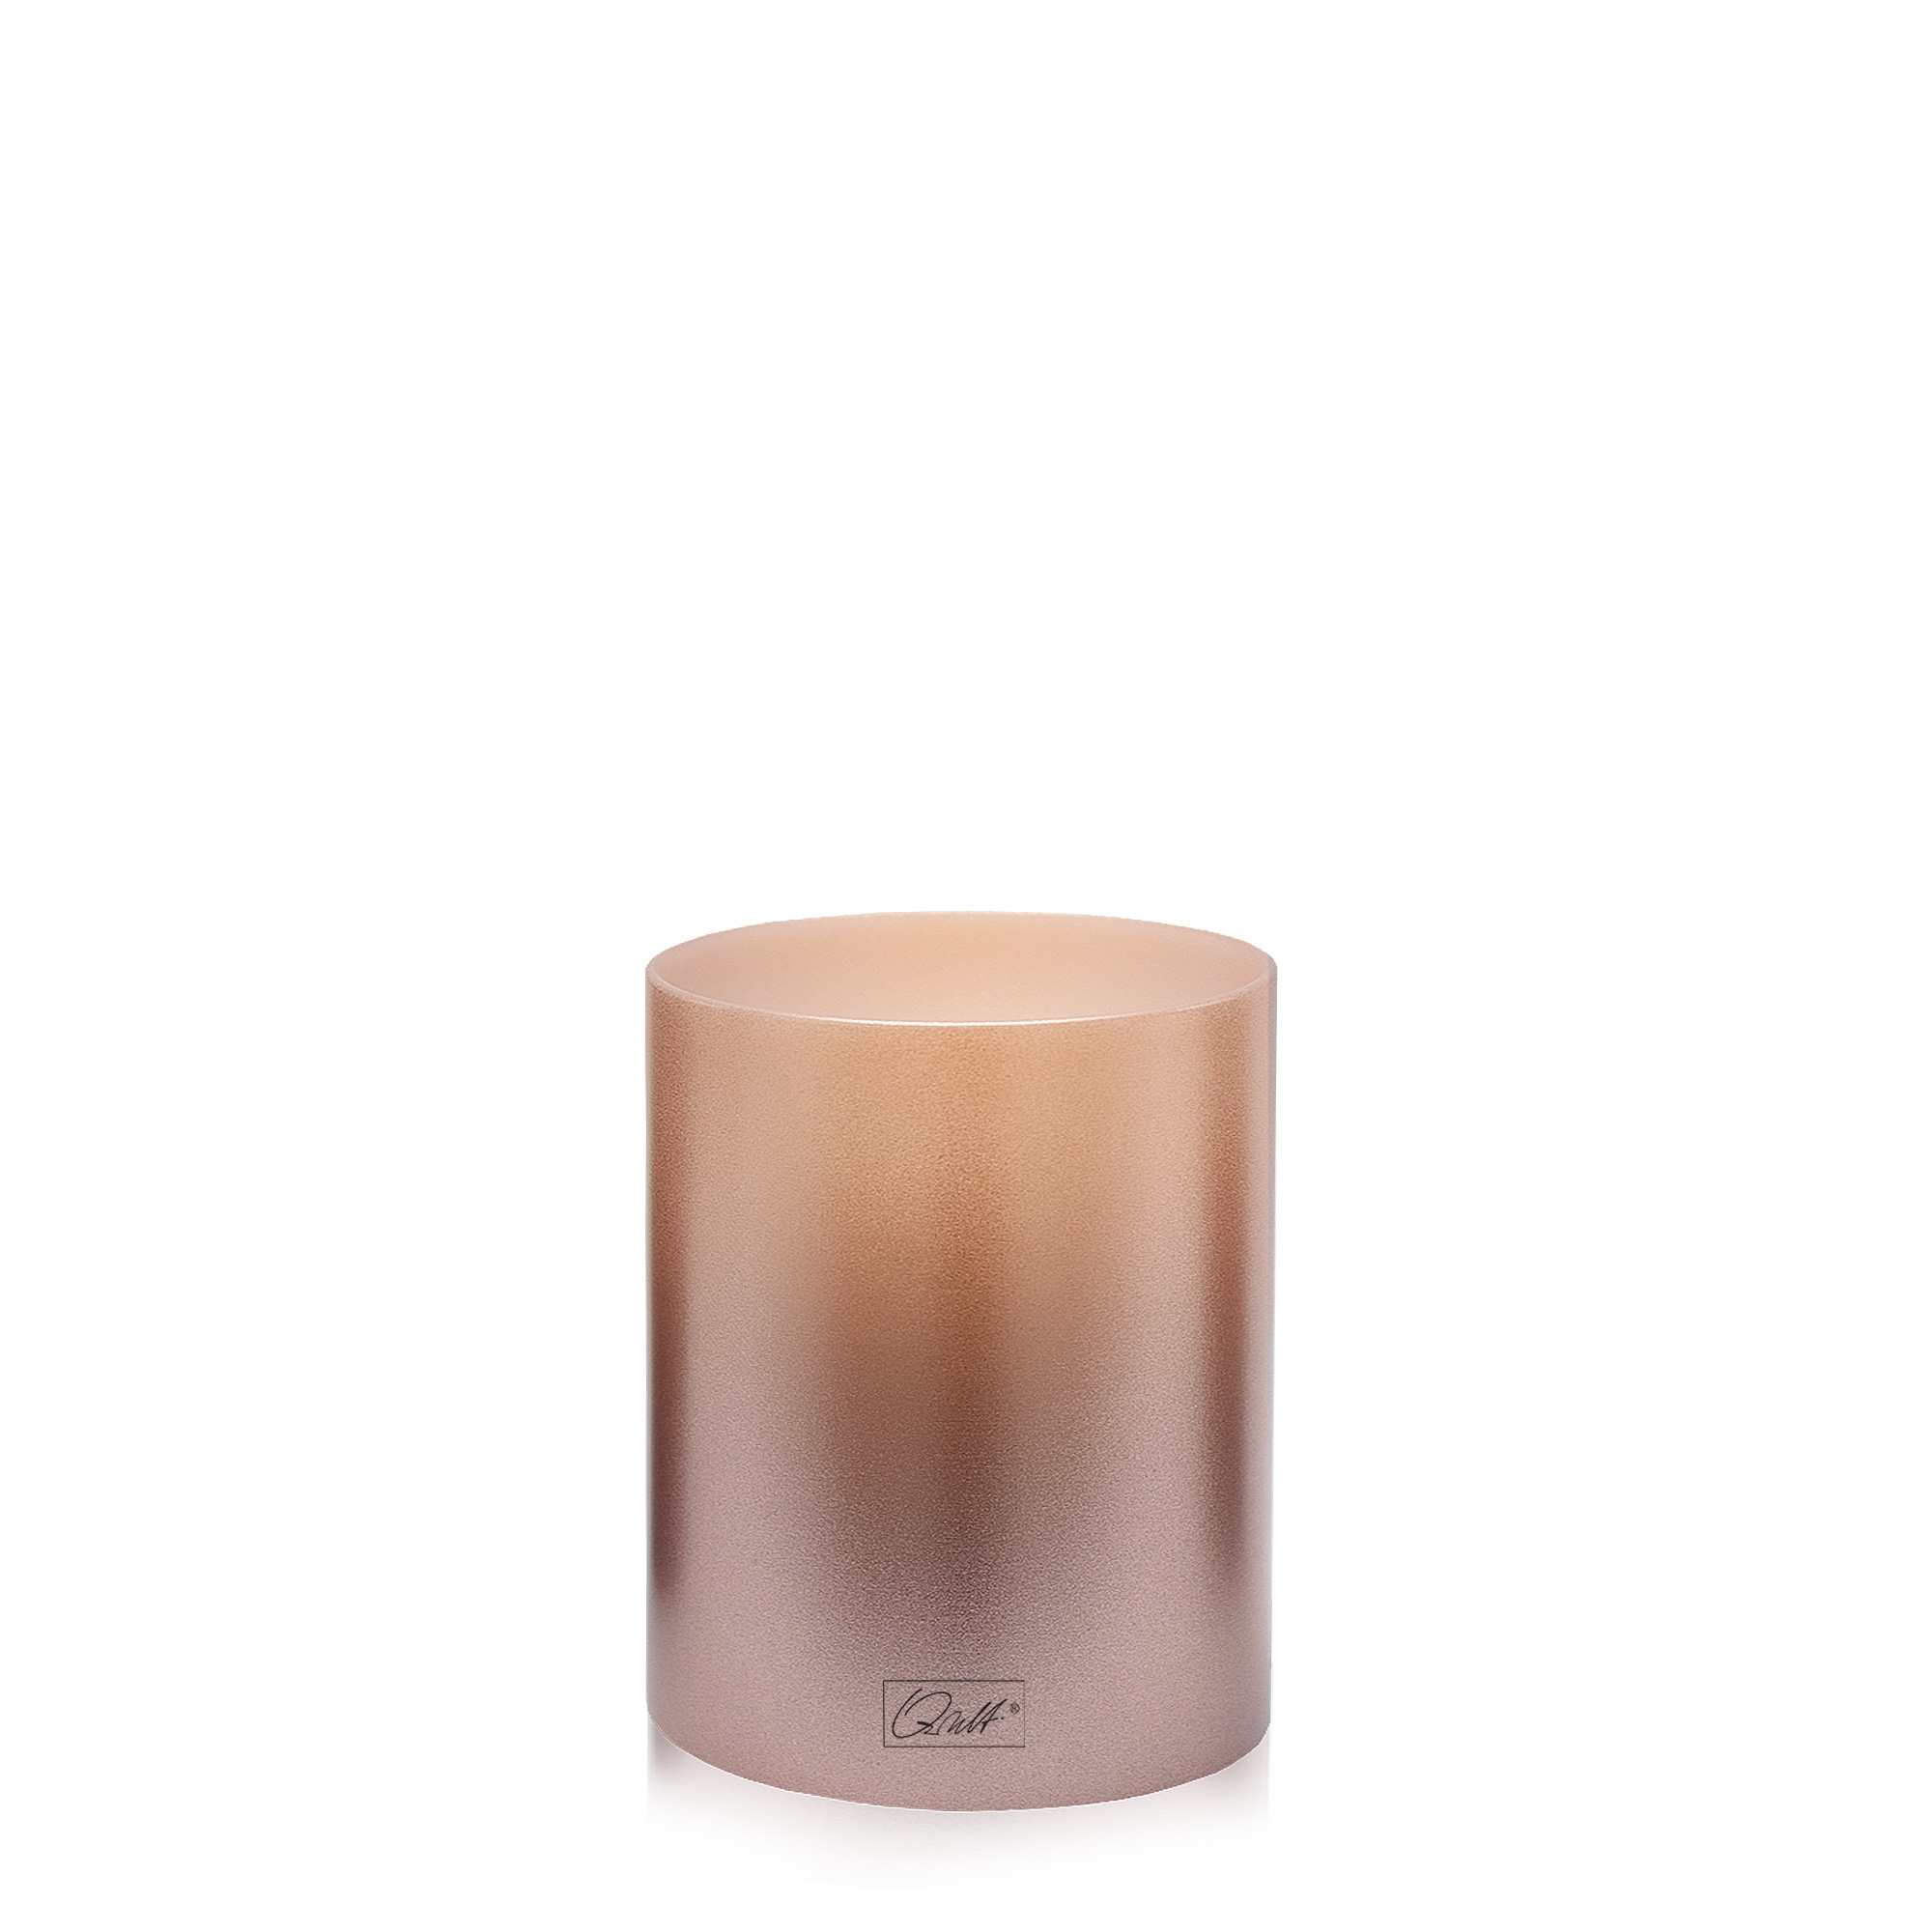 Qult Farluce Inside - Tealight Candle Holder Ø 8 cm - Rose Gold